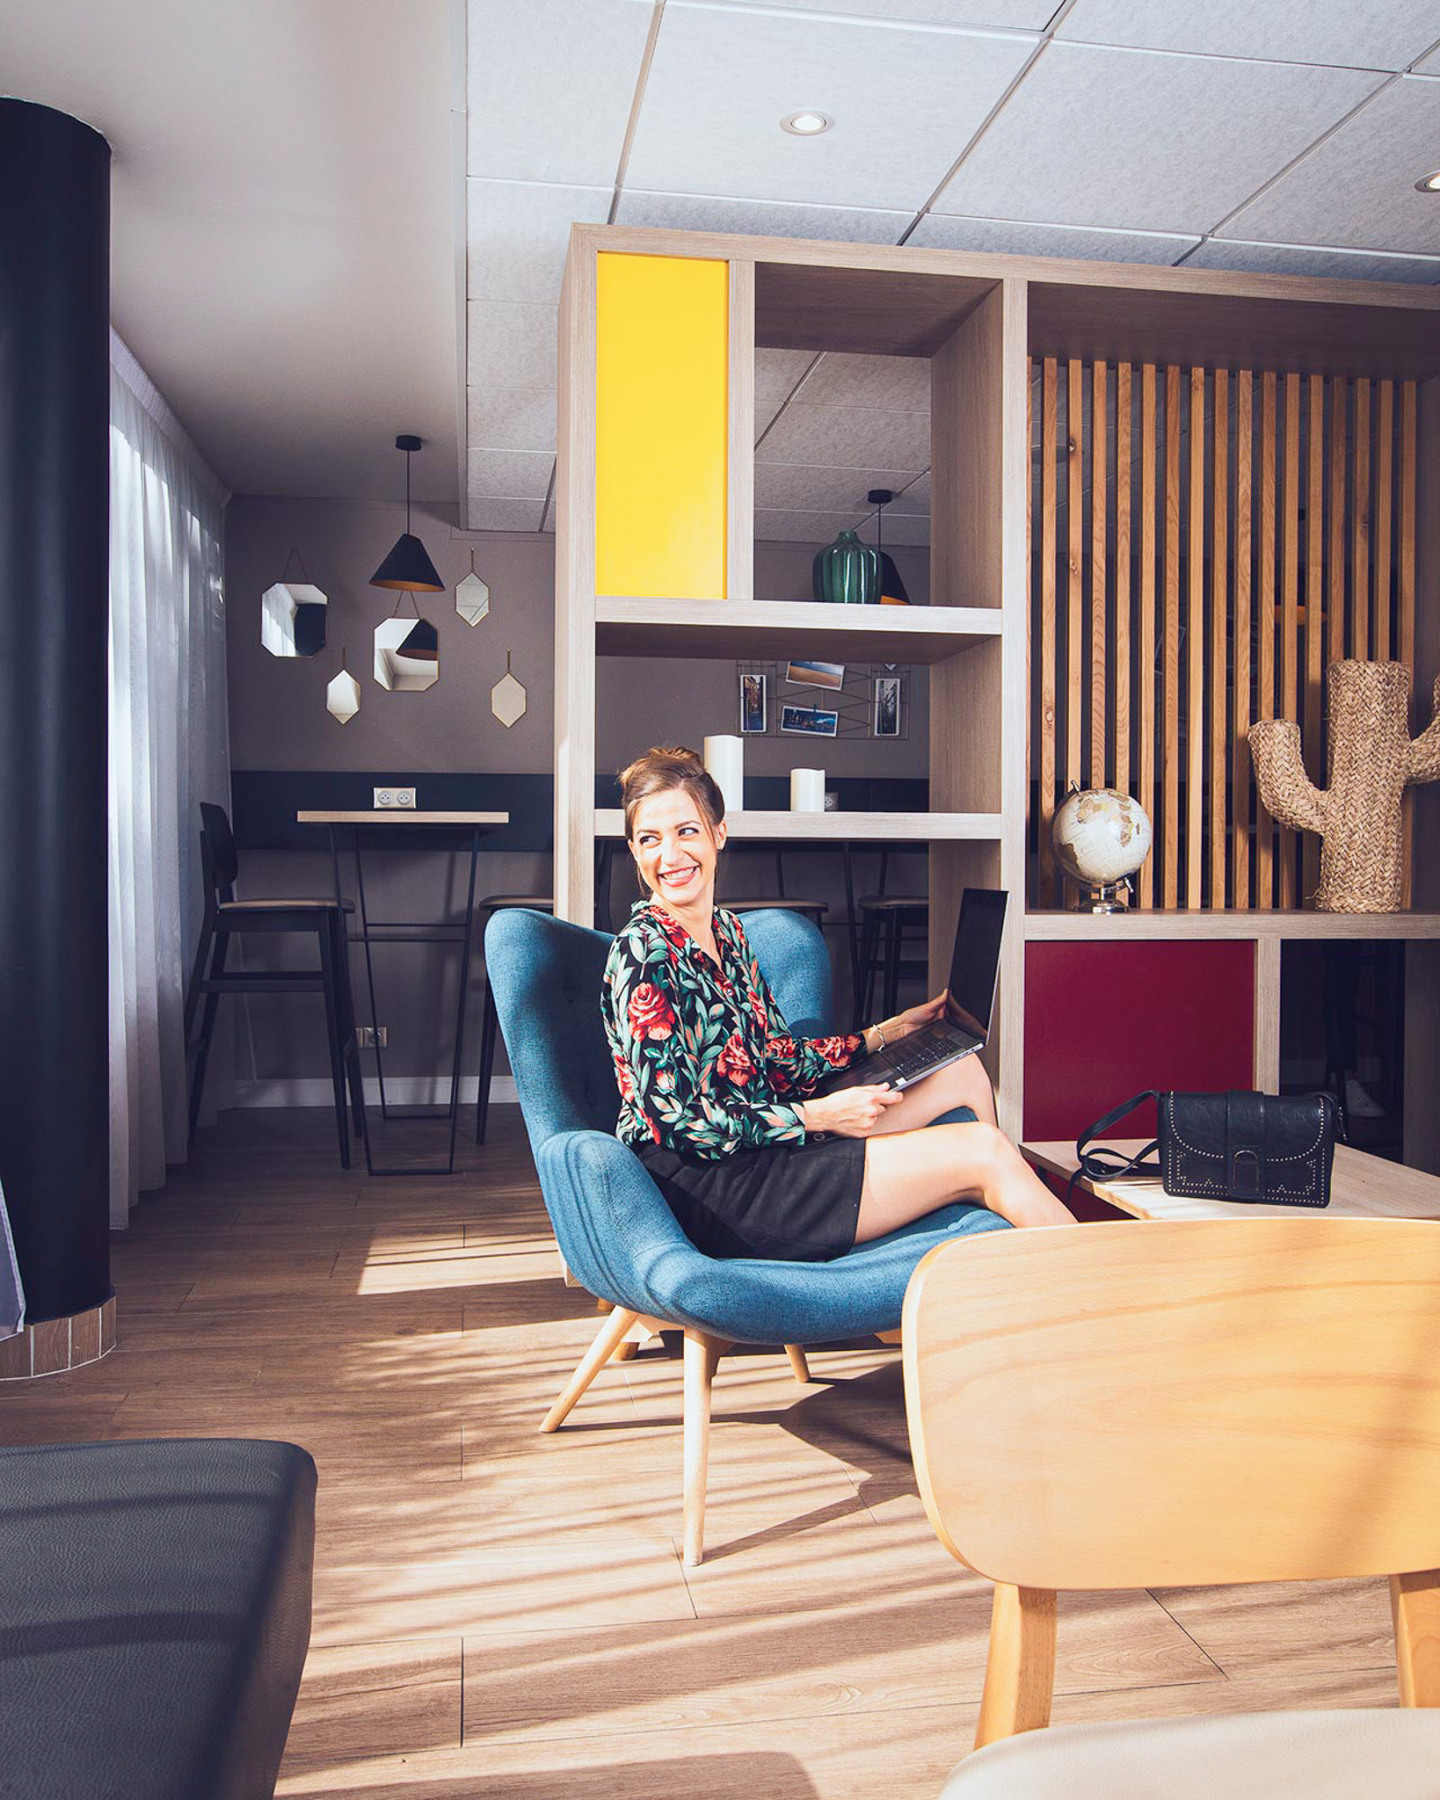 Femme souriante travaillant sur un ordinateur portable tout en s'asseyant confortablement dans un fauteuil en tissu bleu dans un appartement Appart'City, avec un intérieur moderne comprenant des étagères en bois, un bureau de travail, et une décoration intérieure élégante.